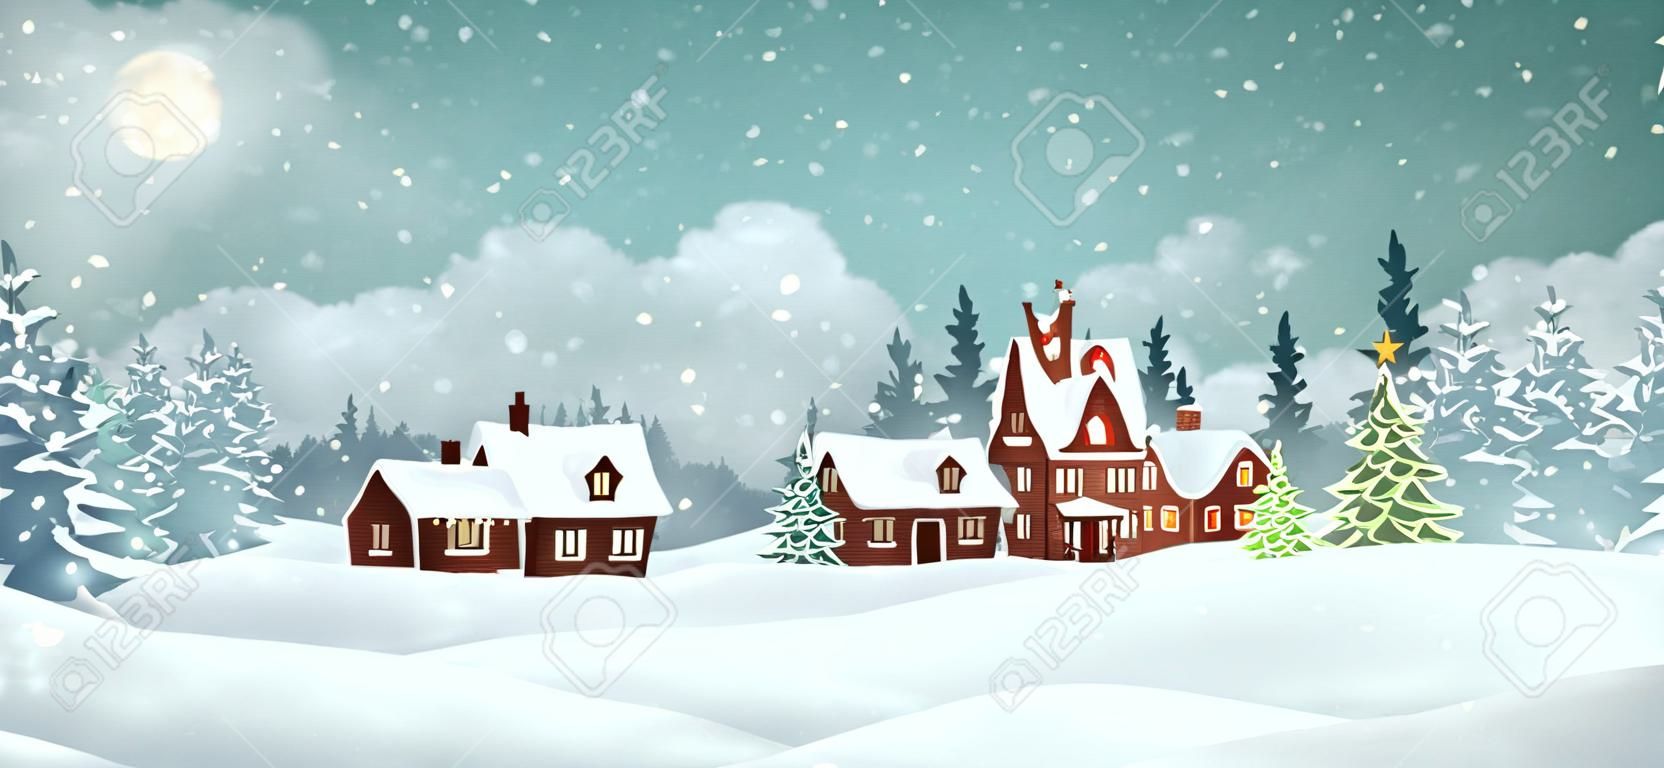 Świąteczne domy wiejskie z zimowym lasem sosnowym. święta bożego narodzenia ilustracji wektorowych